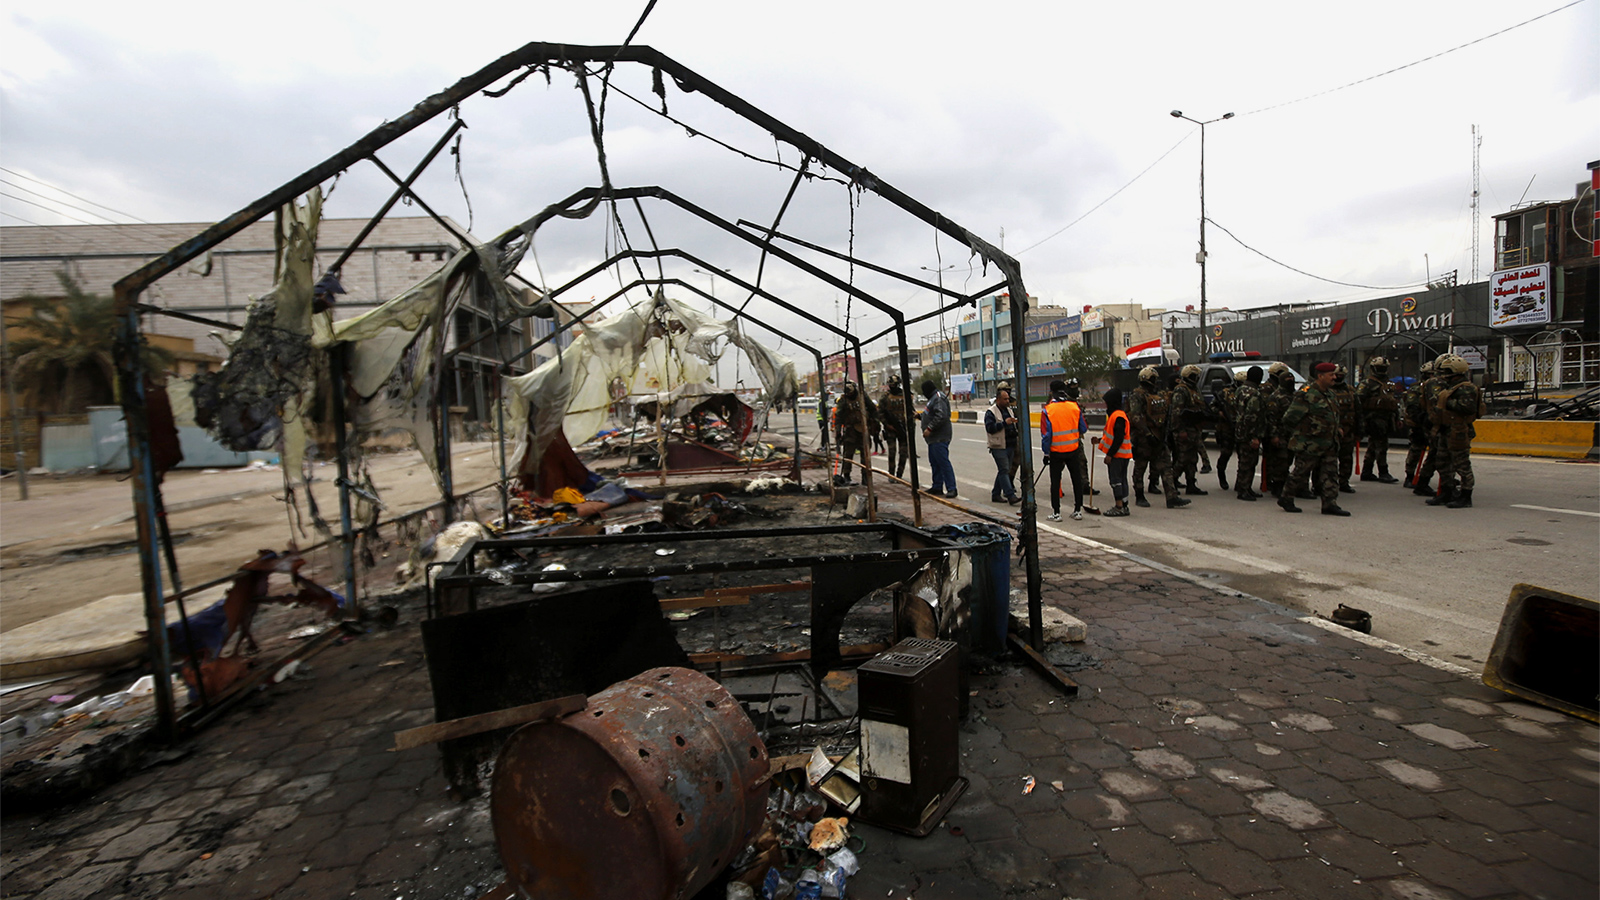 بعد حرق خيم المعتصمين في البصرة وتمركز قوات الأمن (الأوروبية)